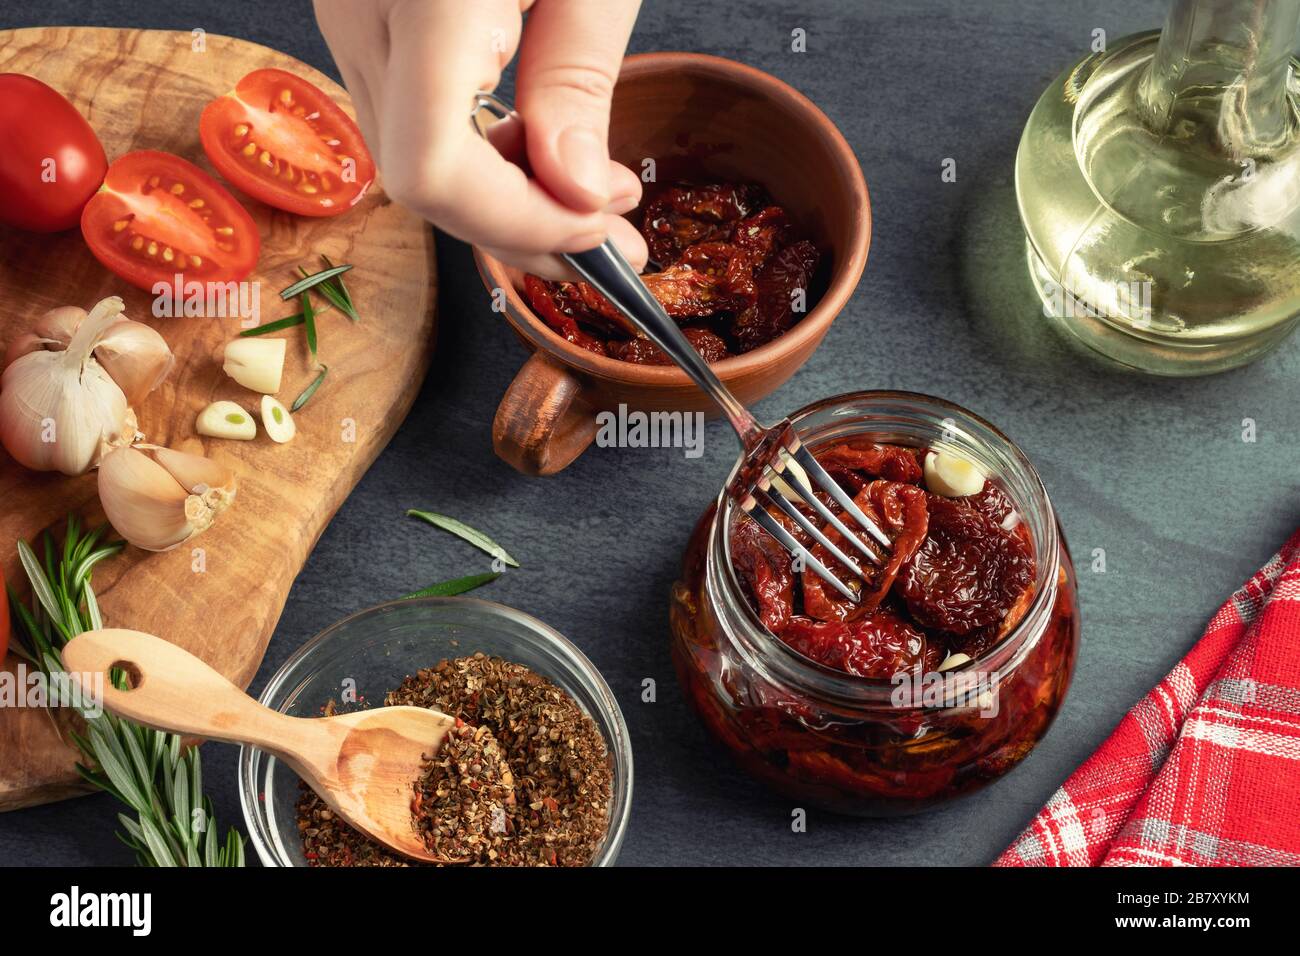 Main femelle place les tomates fourrées dans un pot en verre avec une fourchette. Cuisson de tomates jerky en conserve avec des épices Banque D'Images